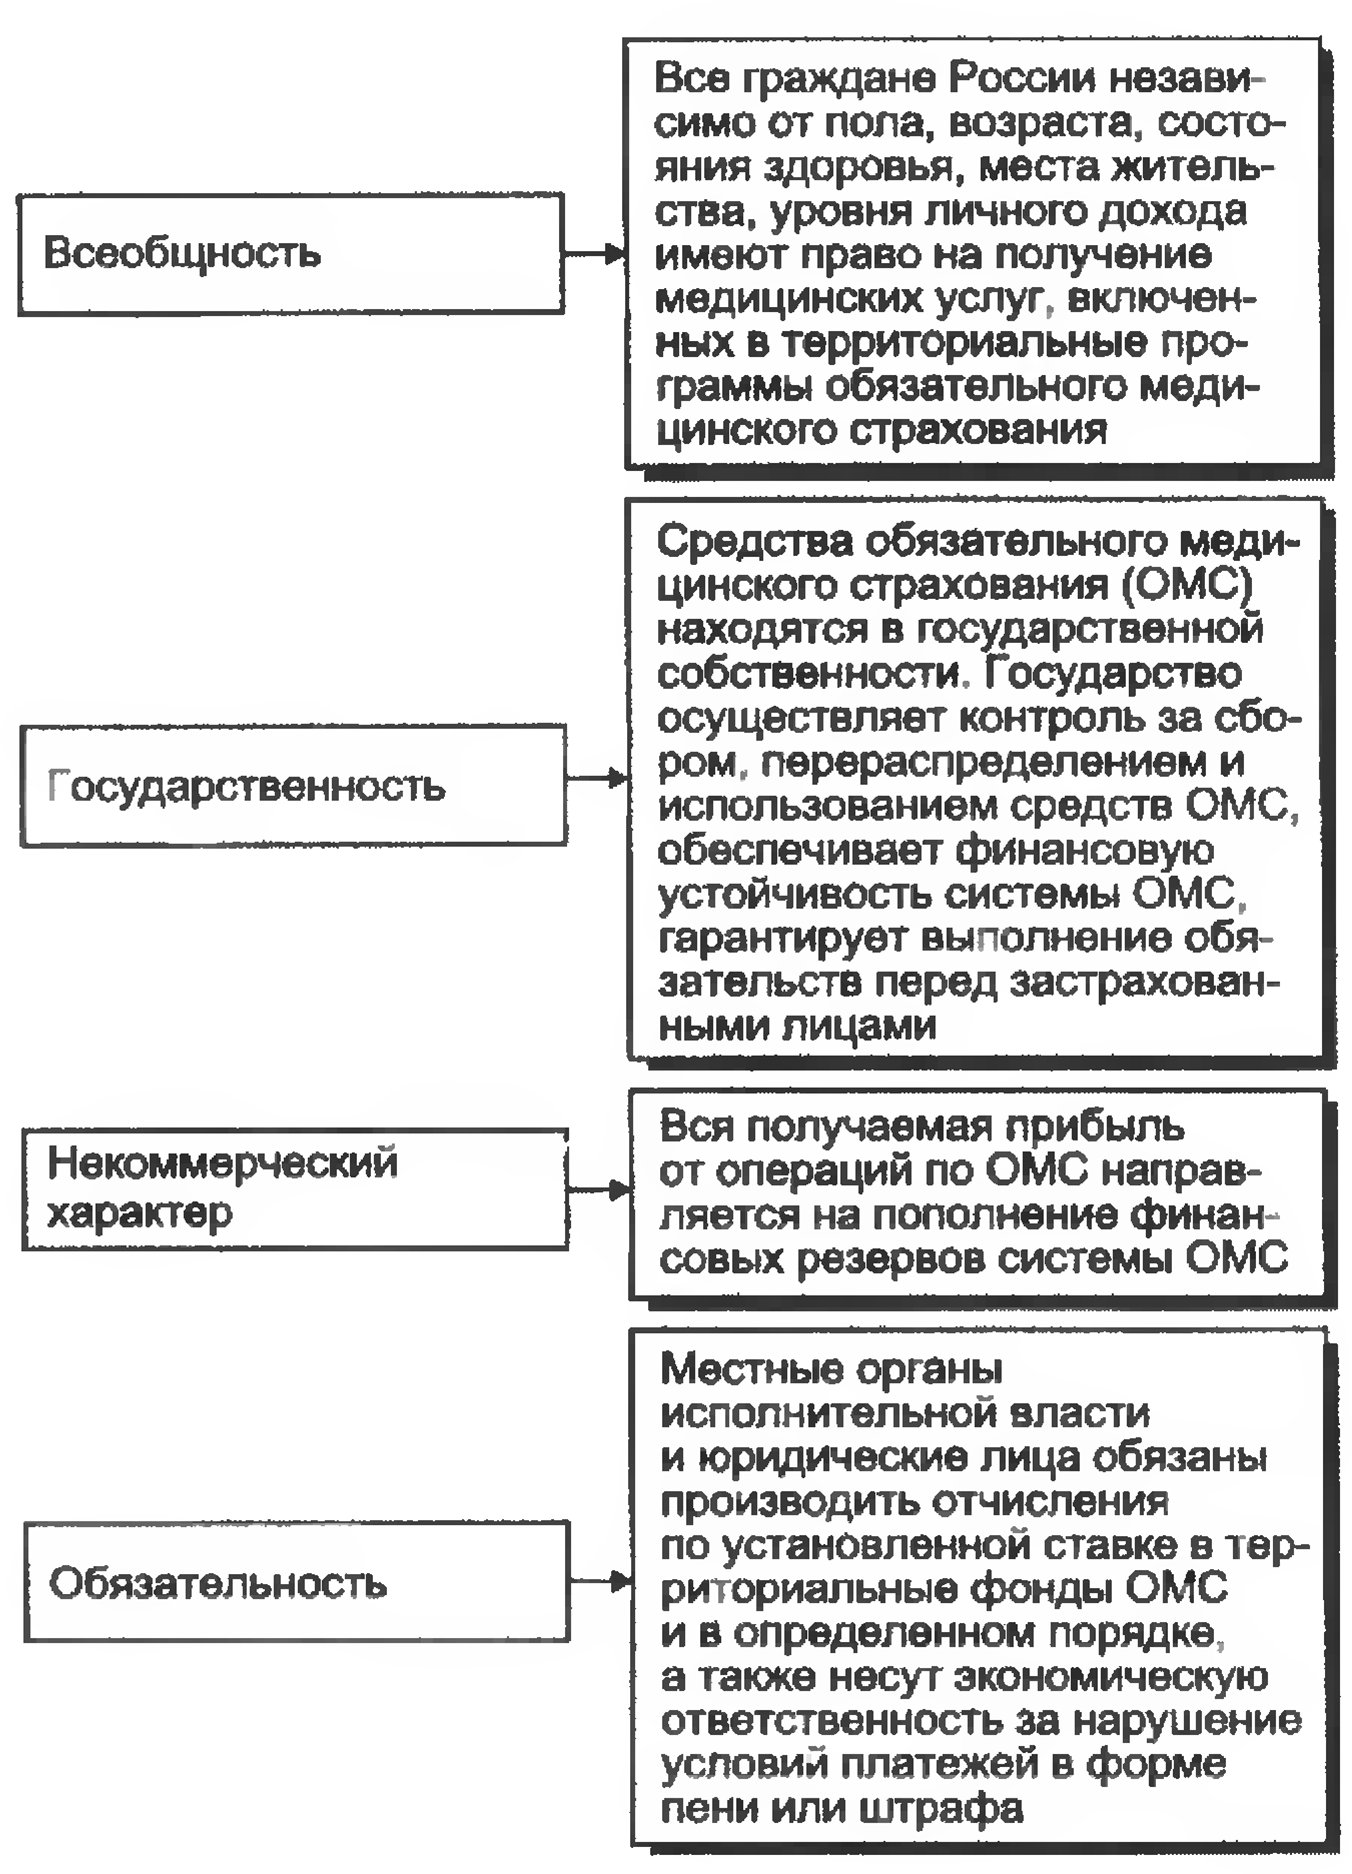 Принципы построения системы здравоохранения в Российской Федерации